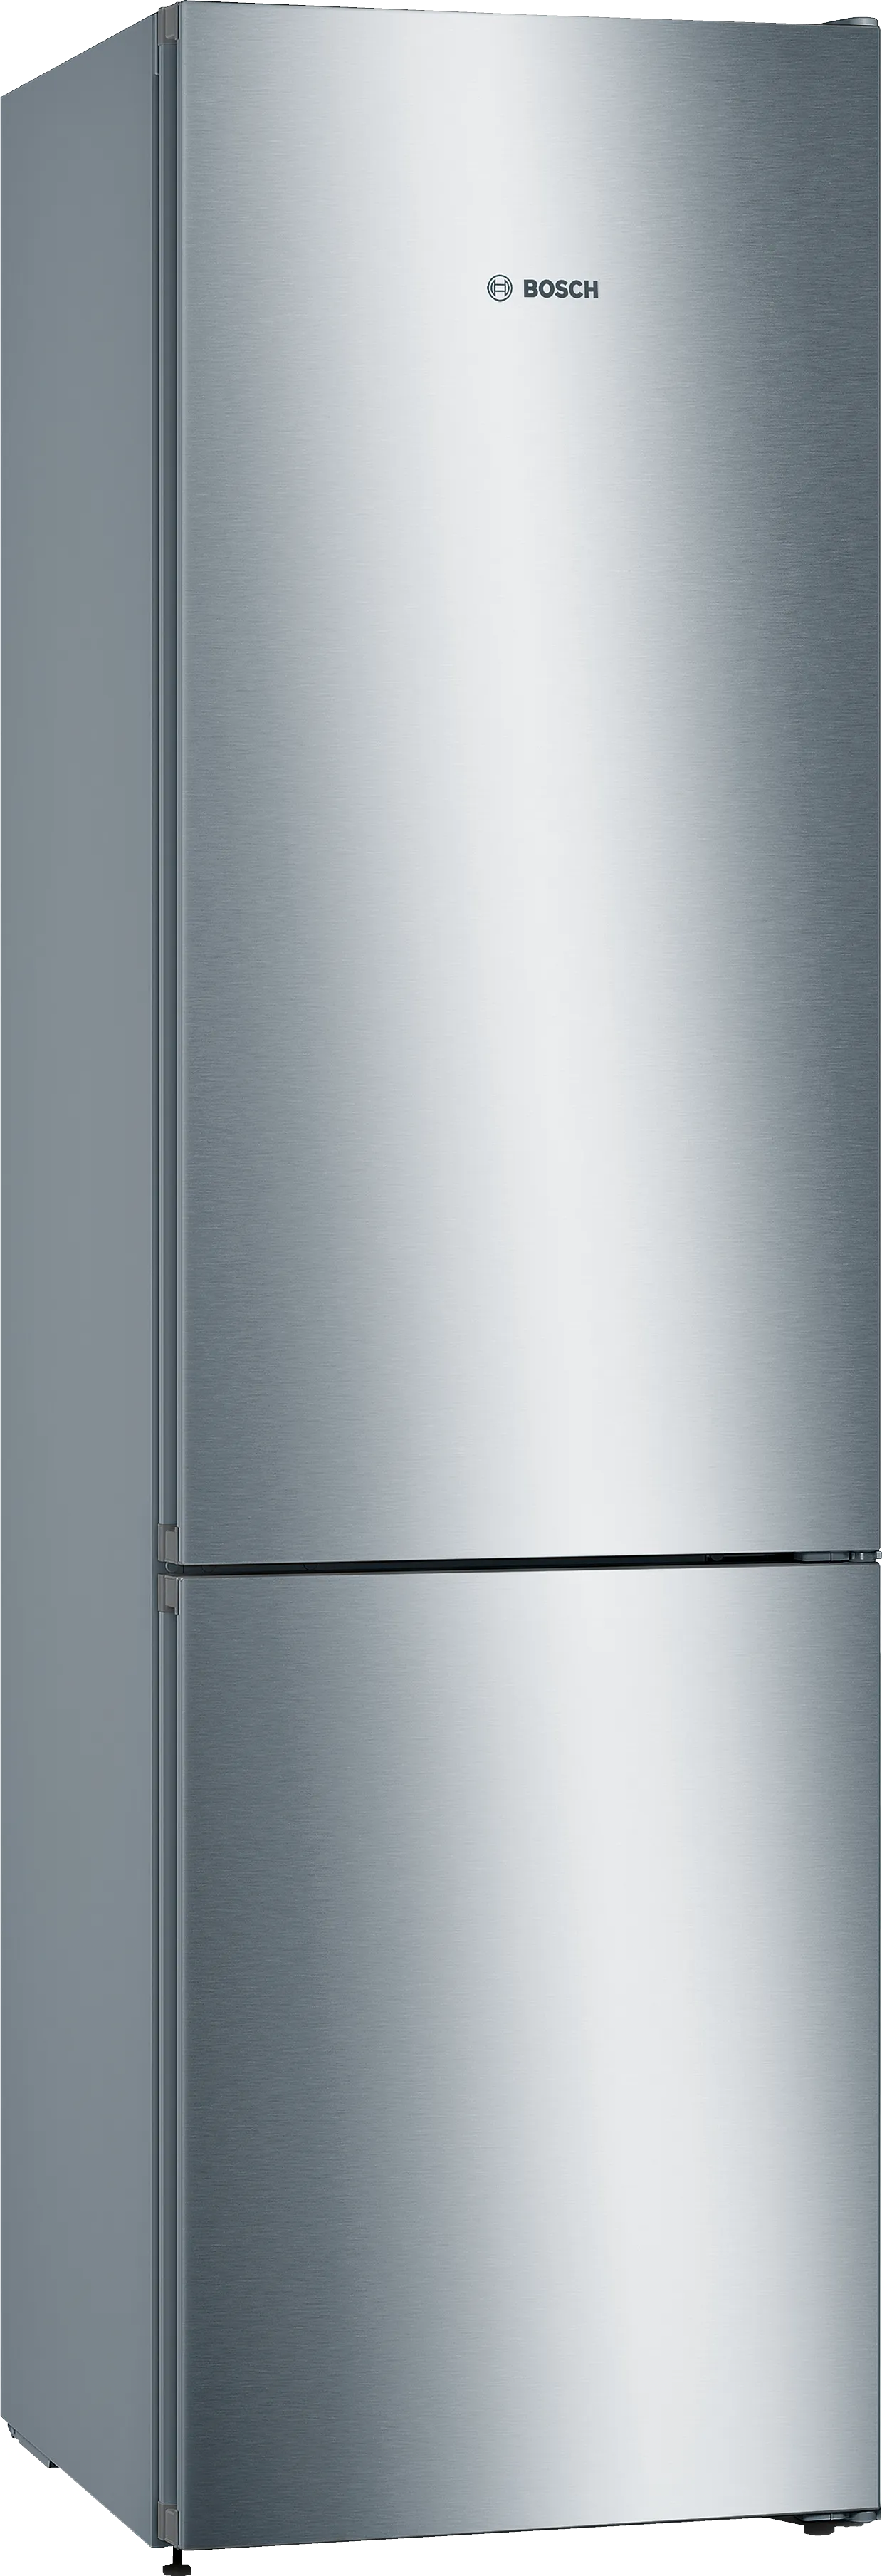 Серия 4 Отдельно стоящий холодильник с нижней морозильной камерой 203 x 60 cm Нерж. ст. легкой очистки 